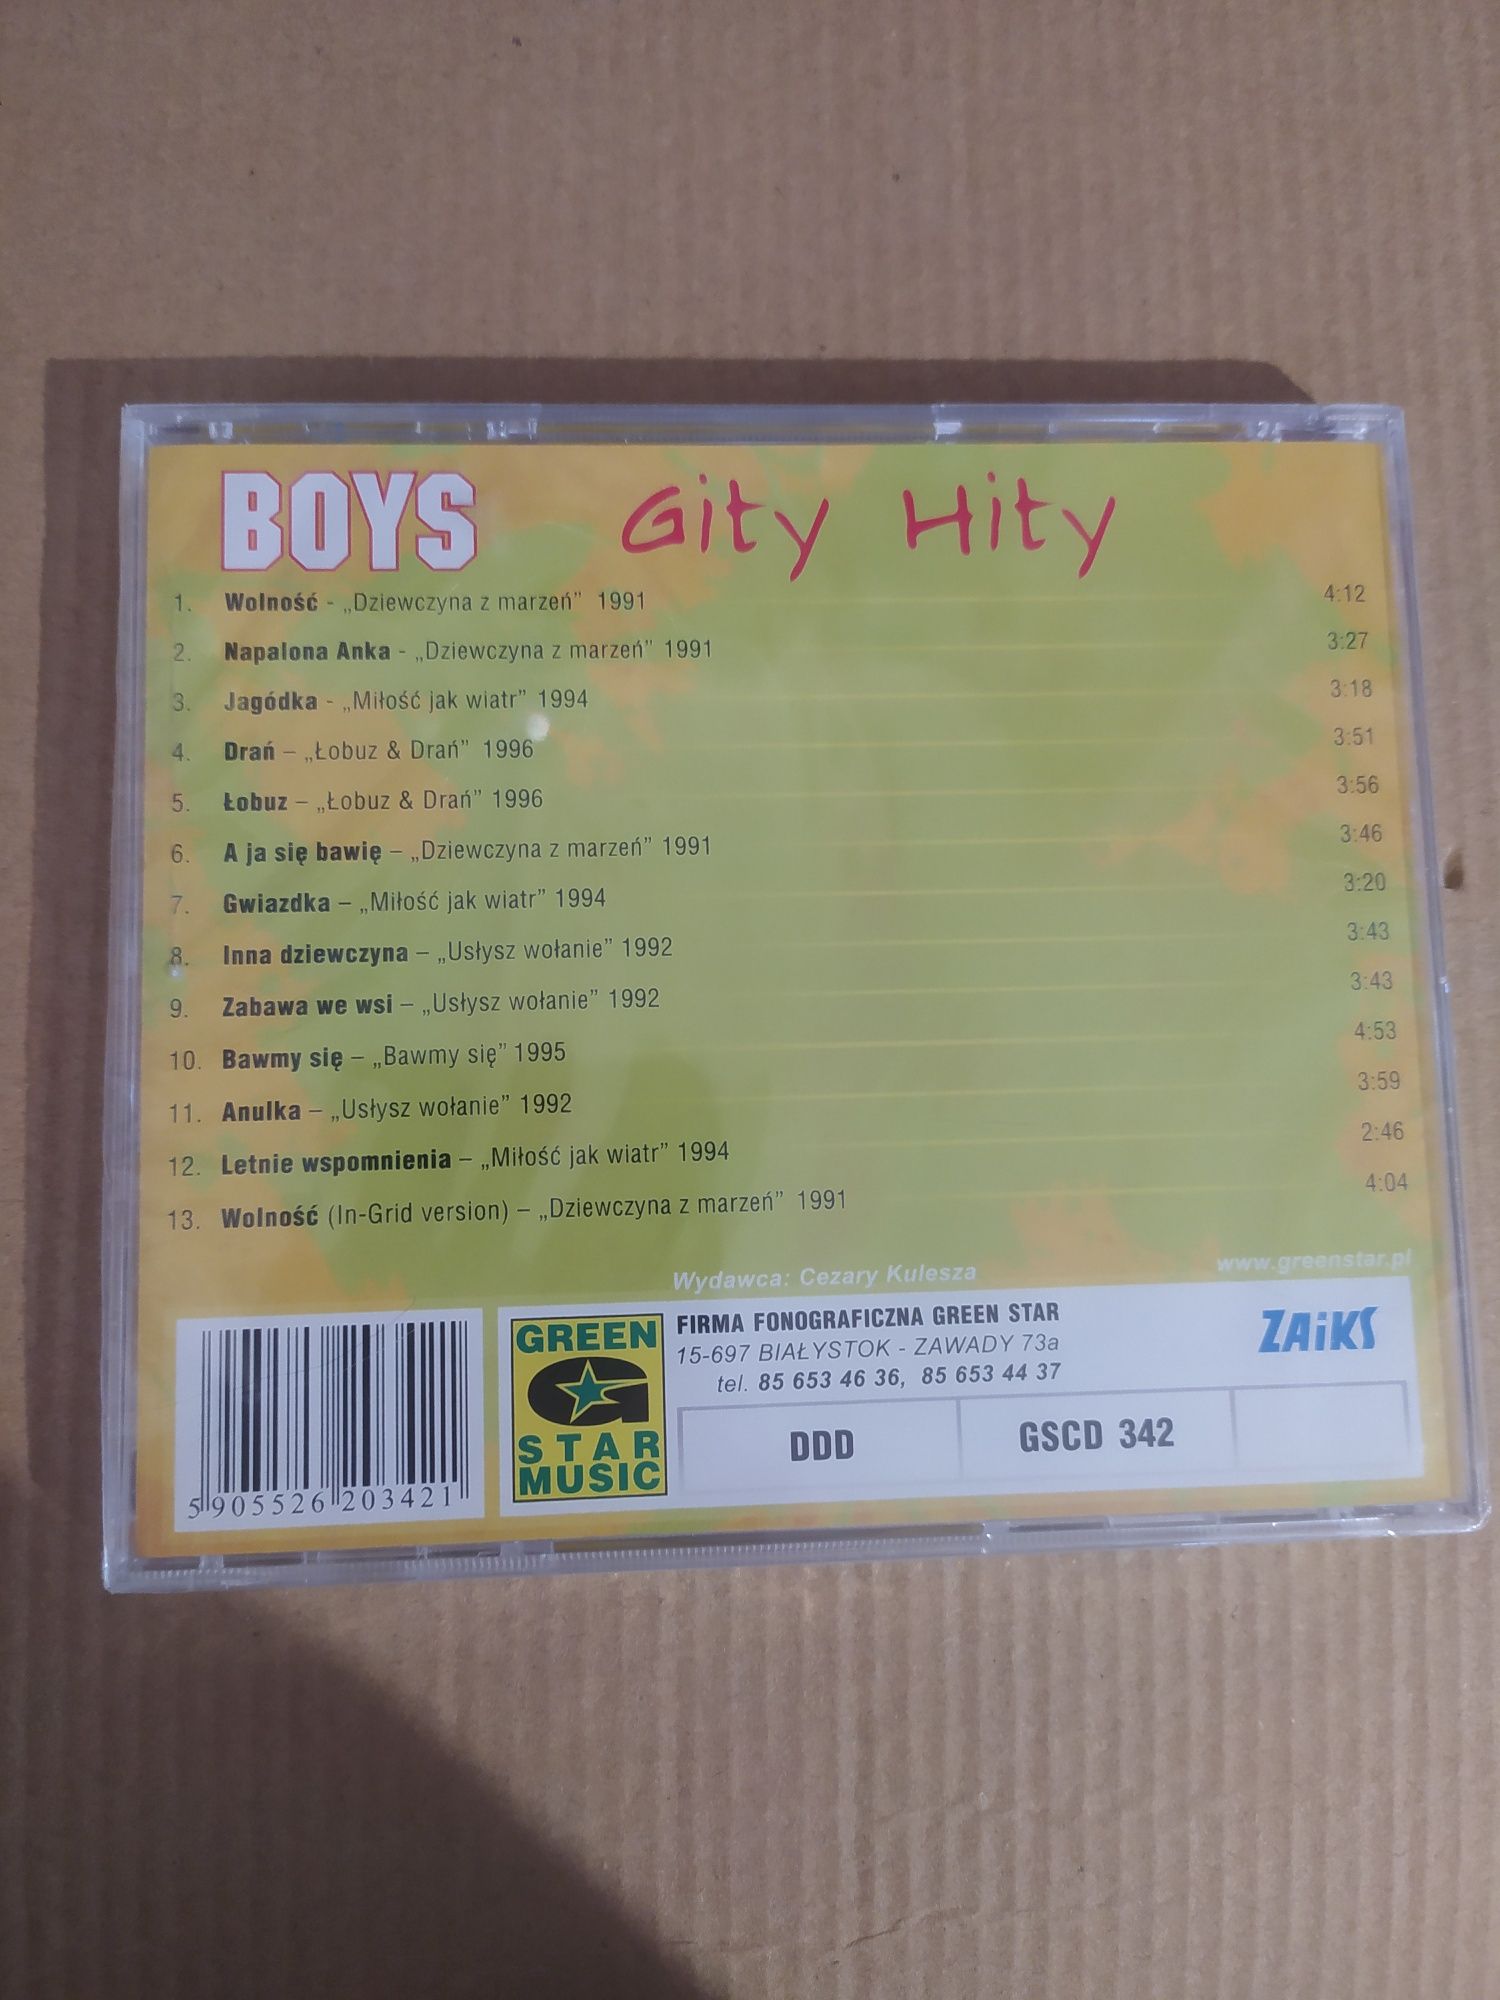 Płyta CD Boys "Gity Hity" Nowa w oryginalnej folii